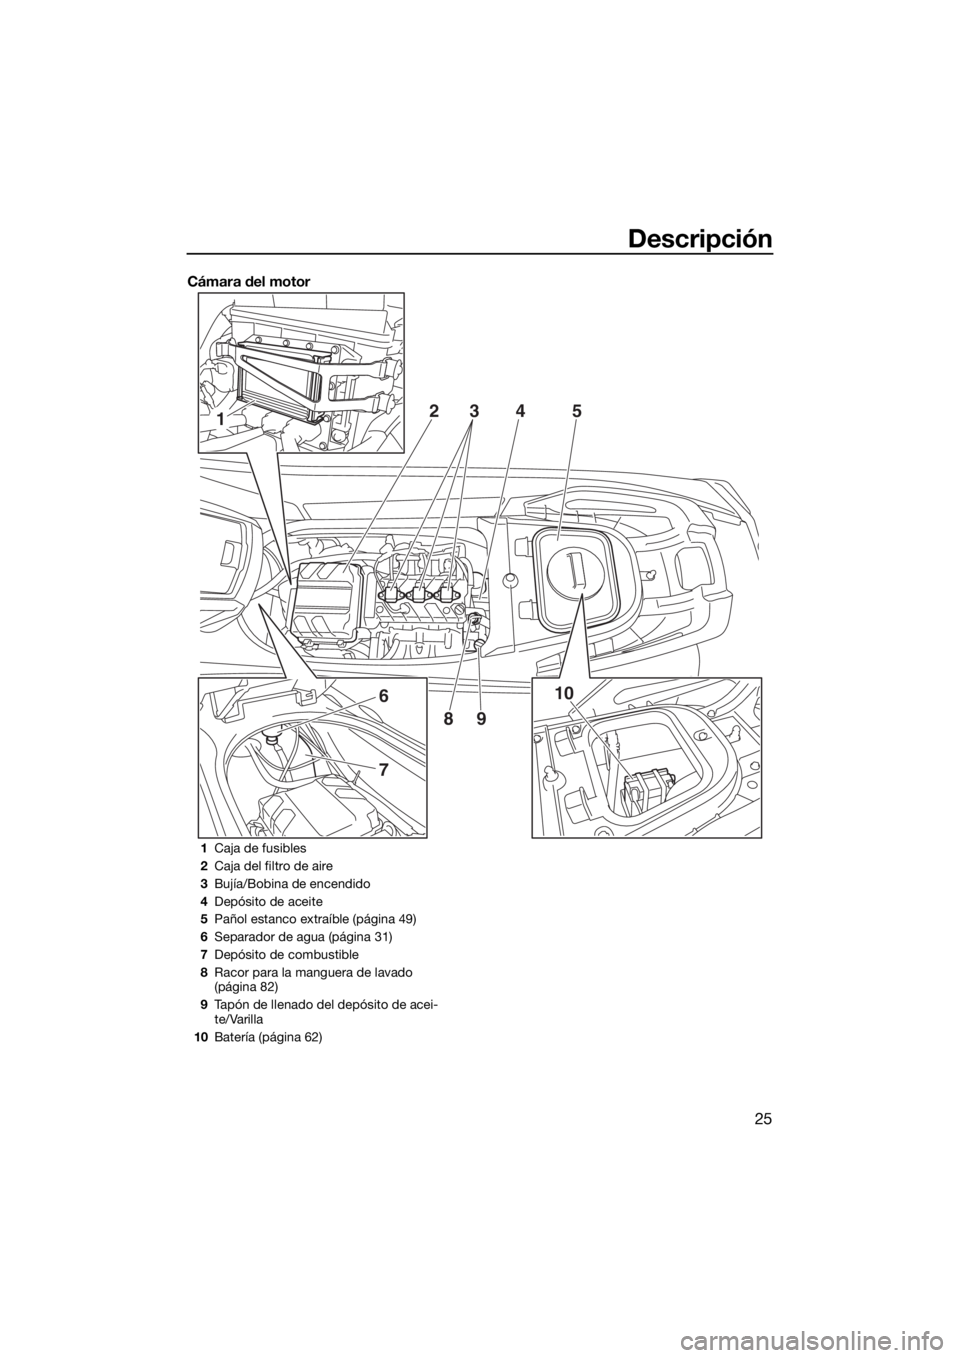 YAMAHA VX 2018  Manuale de Empleo (in Spanish) Descripción
25
Cámara del motor
1
6
7
10 2
345
89
1Caja de fusibles
2Caja del filtro de aire
3Bujía/Bobina de encendido
4Depósito de aceite
5Pañol estanco extraíble (página 49)
6Separador de ag